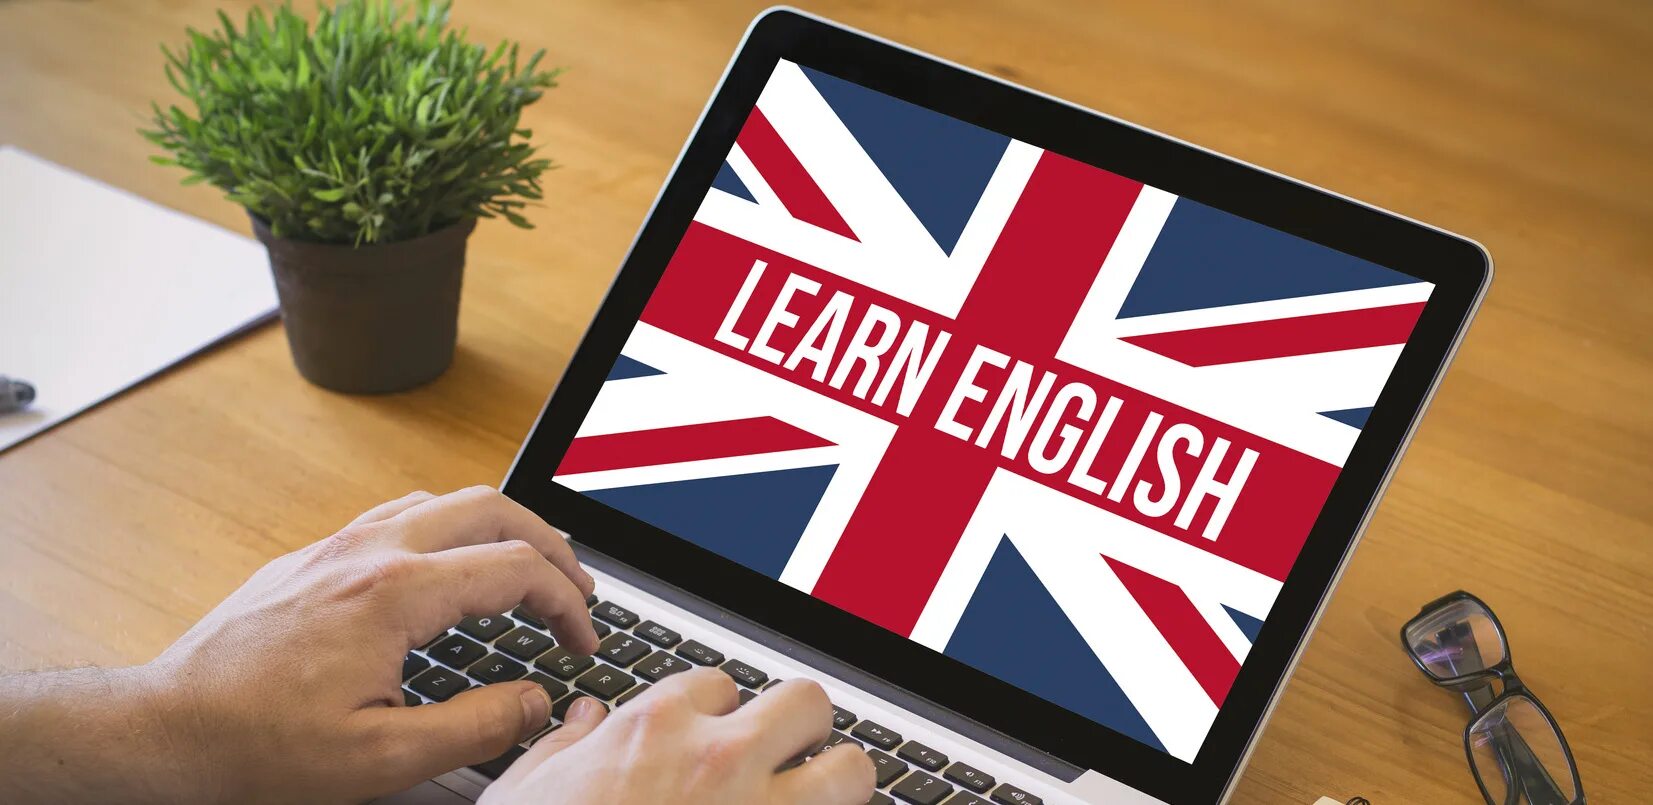 Выучить английский по темам. Английский язык. Изучение английского. Английский на компьютере. Пути изучения английского языка с помощью интернет.